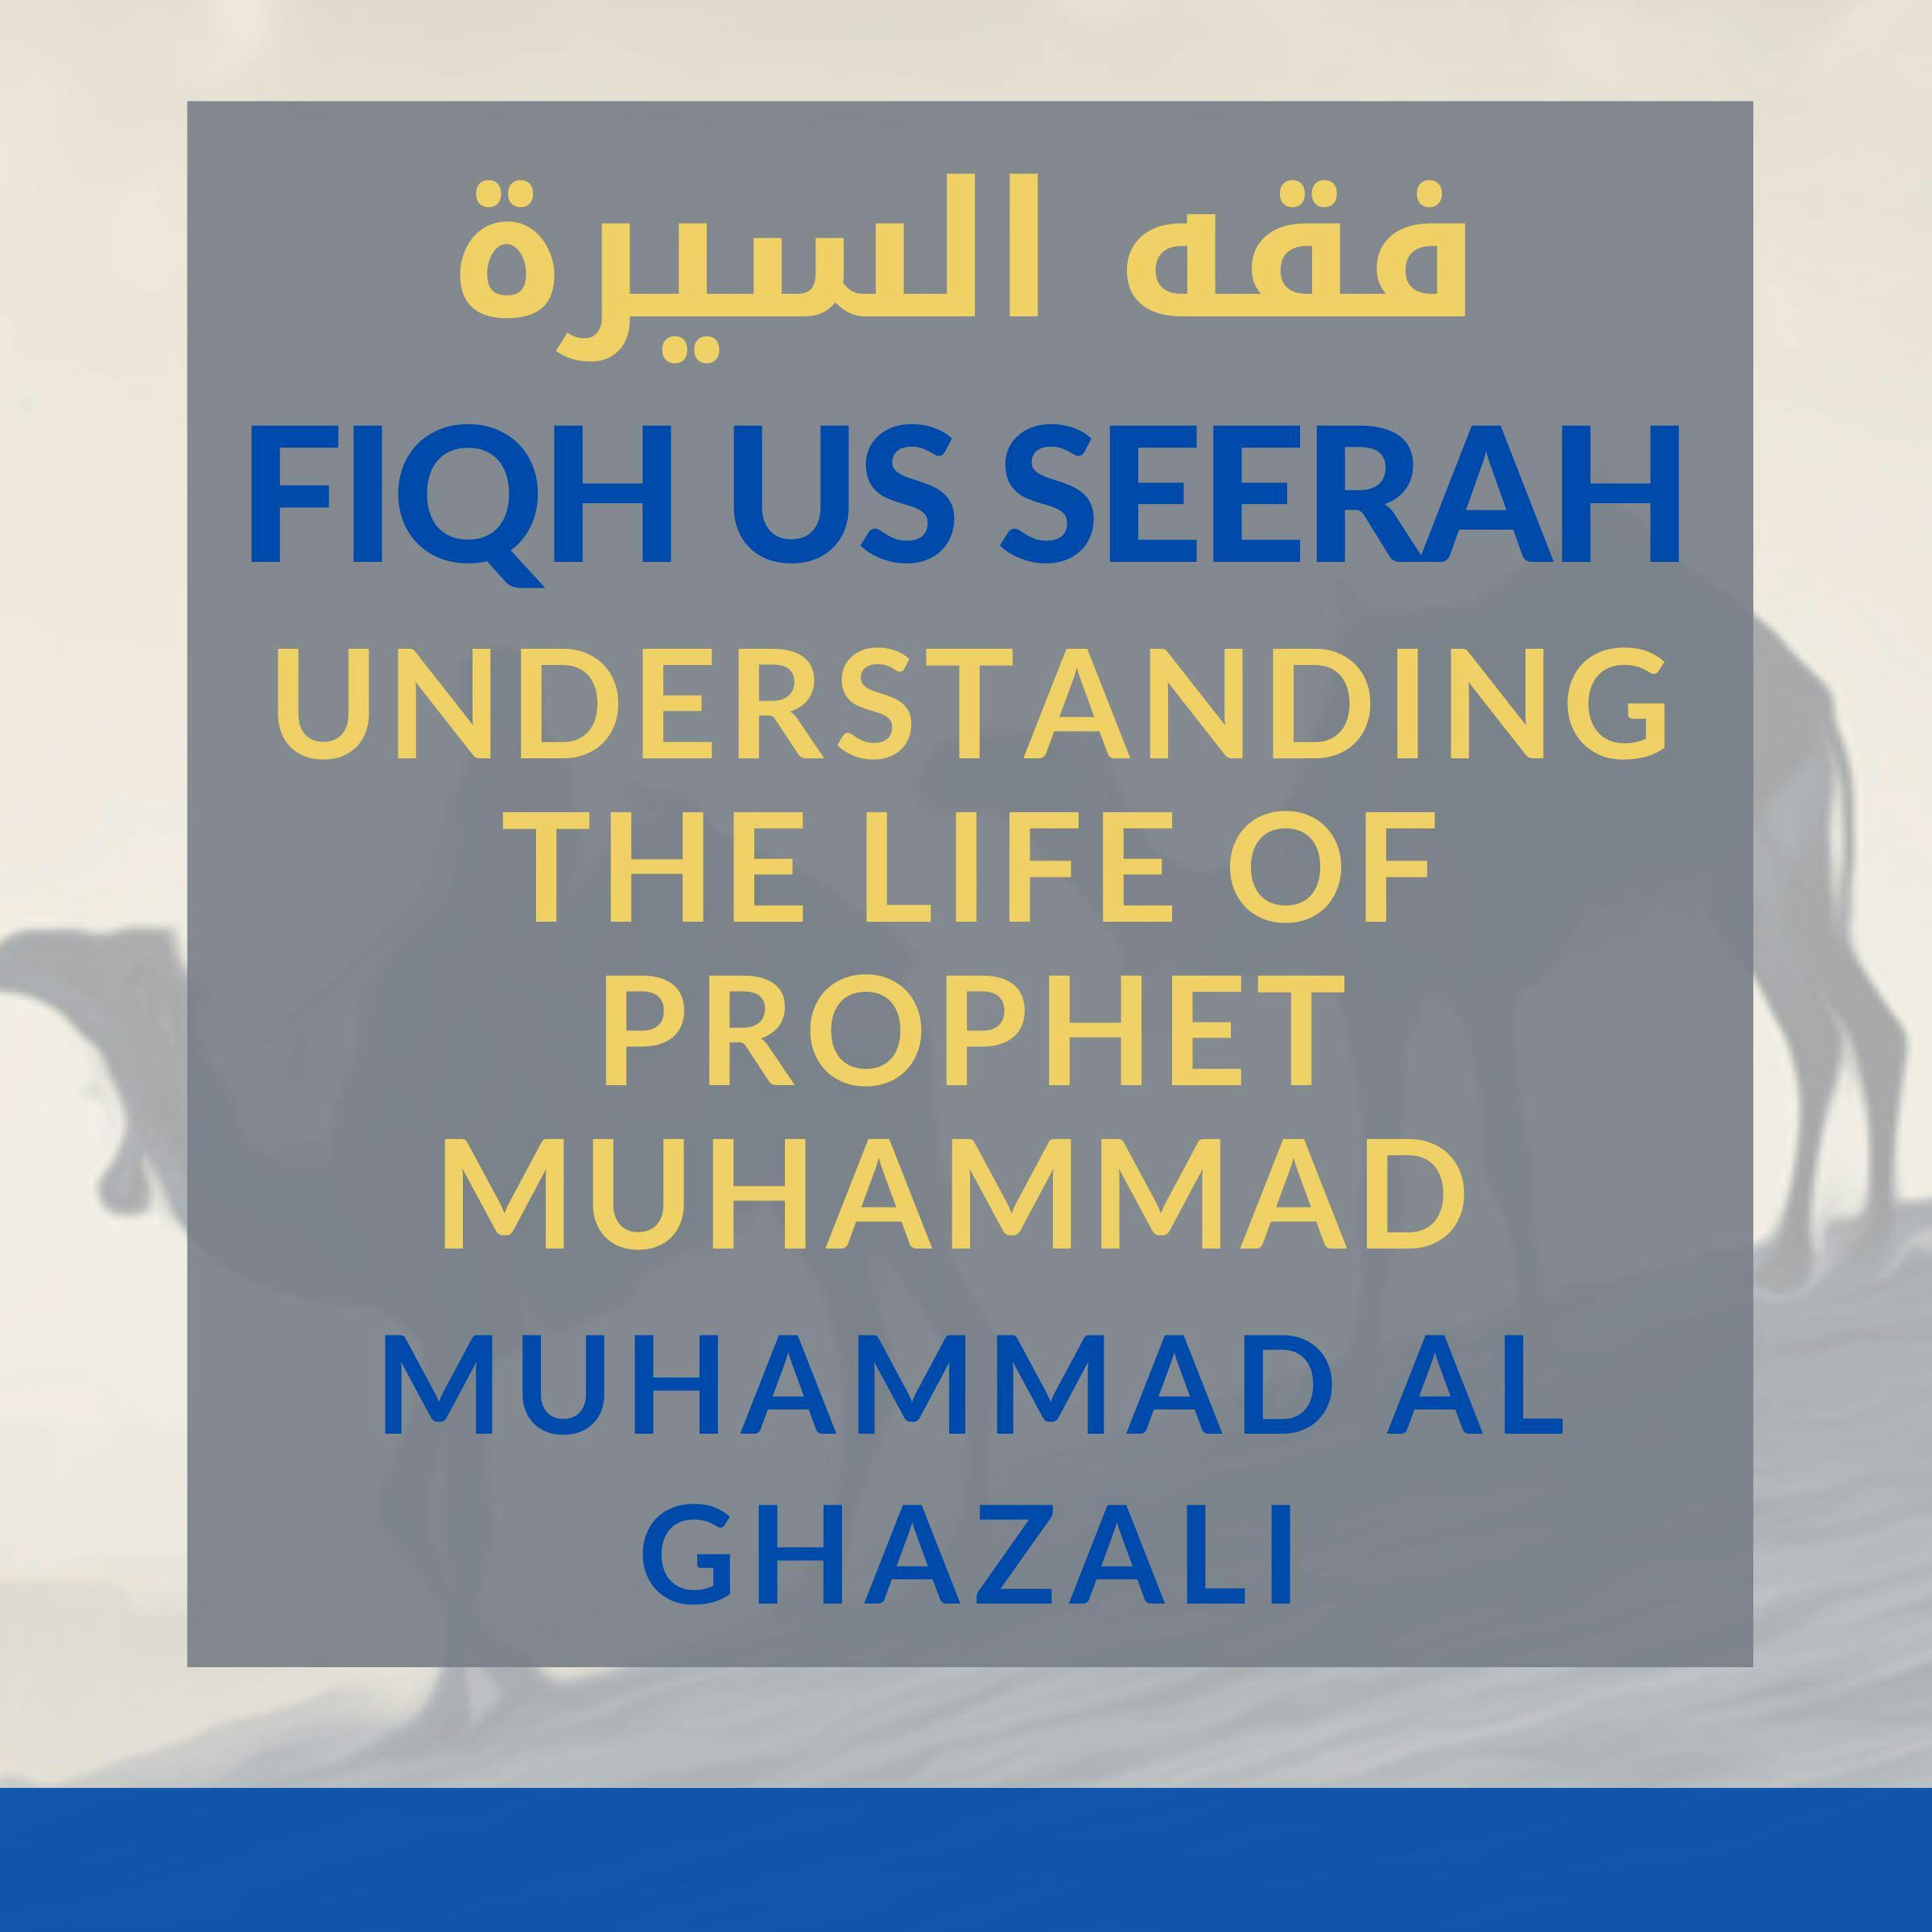 Fiqh Us Seerah: Understanding the Life of Prophet Muhammad - undefined